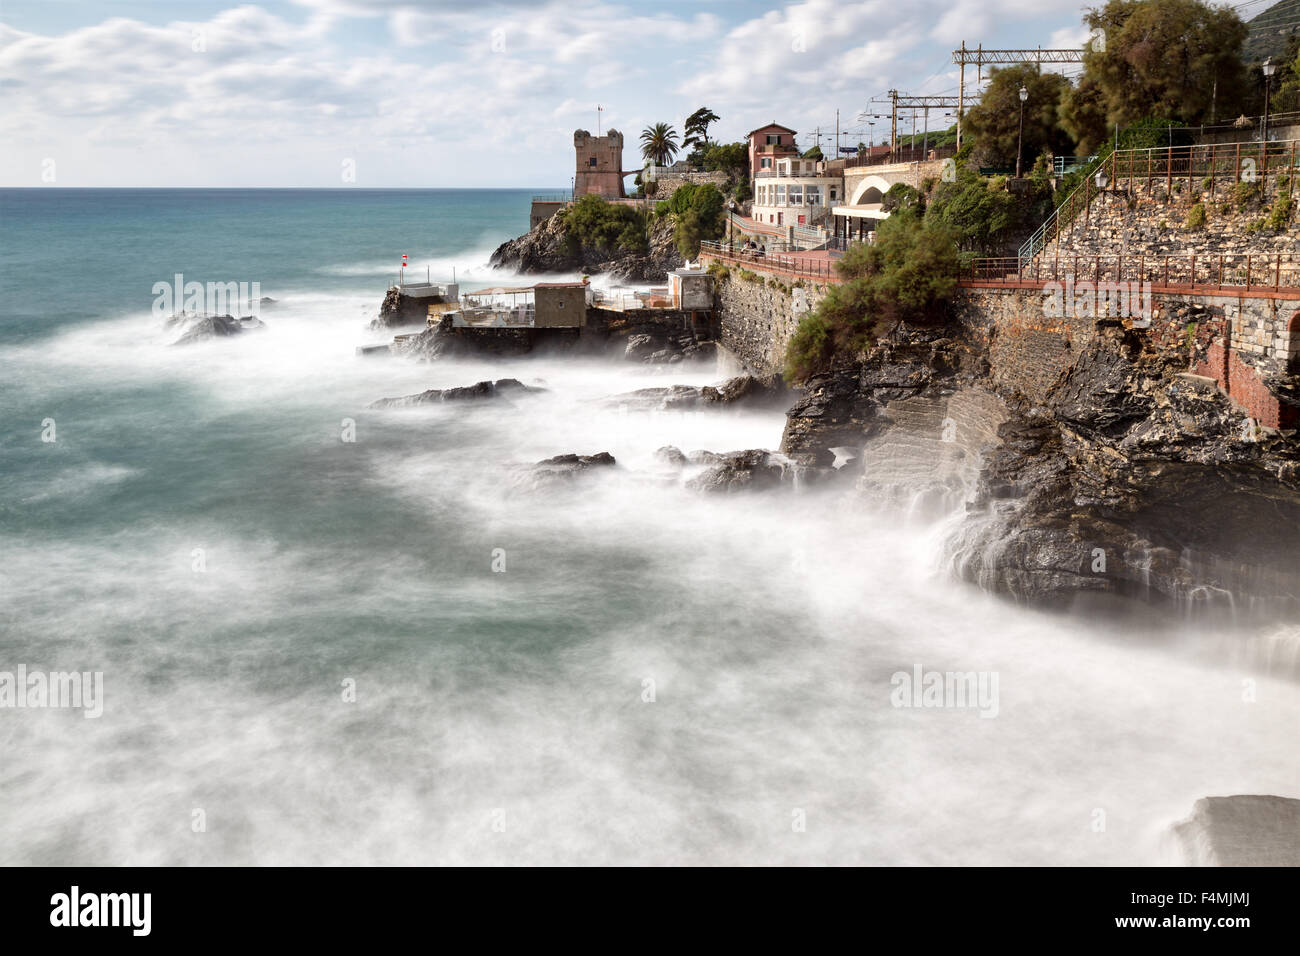 Afficher le long de la côte, Nervi, Gênes, Italie, ex-fiashing village près de Portofino qui est maintenant une station touristique populaire Banque D'Images